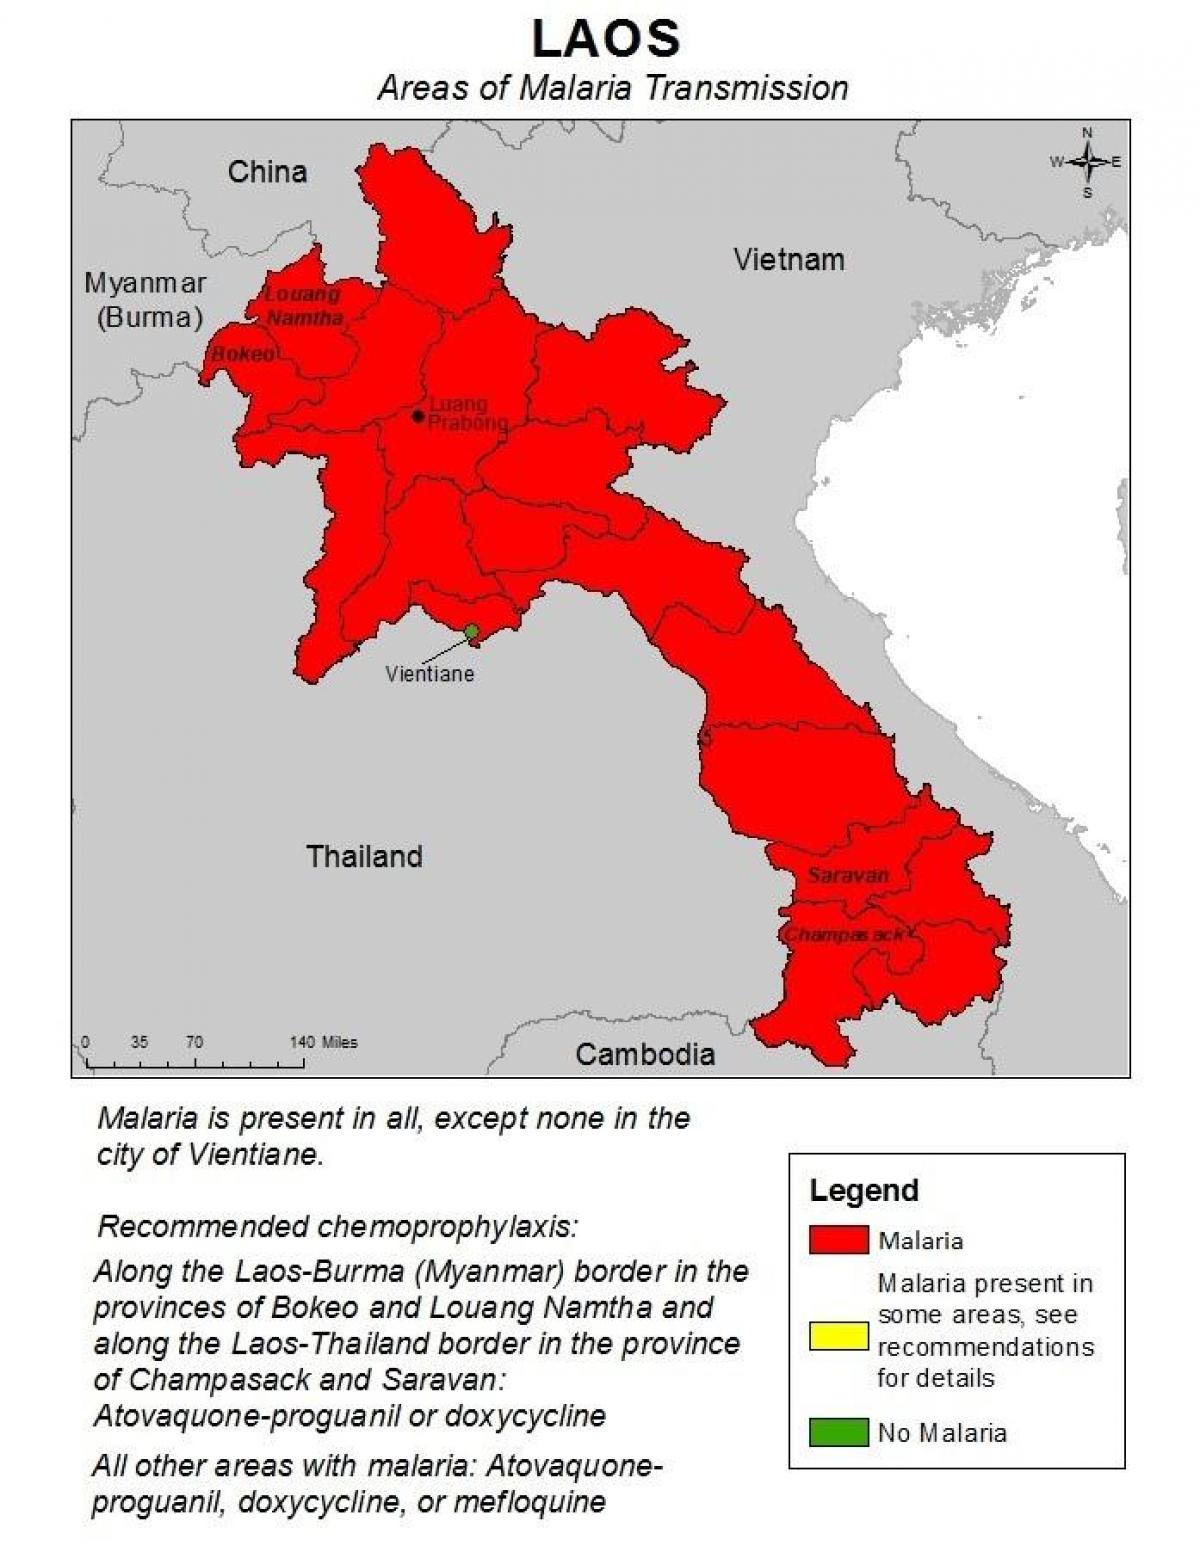 خريطة لاوس الملاريا 